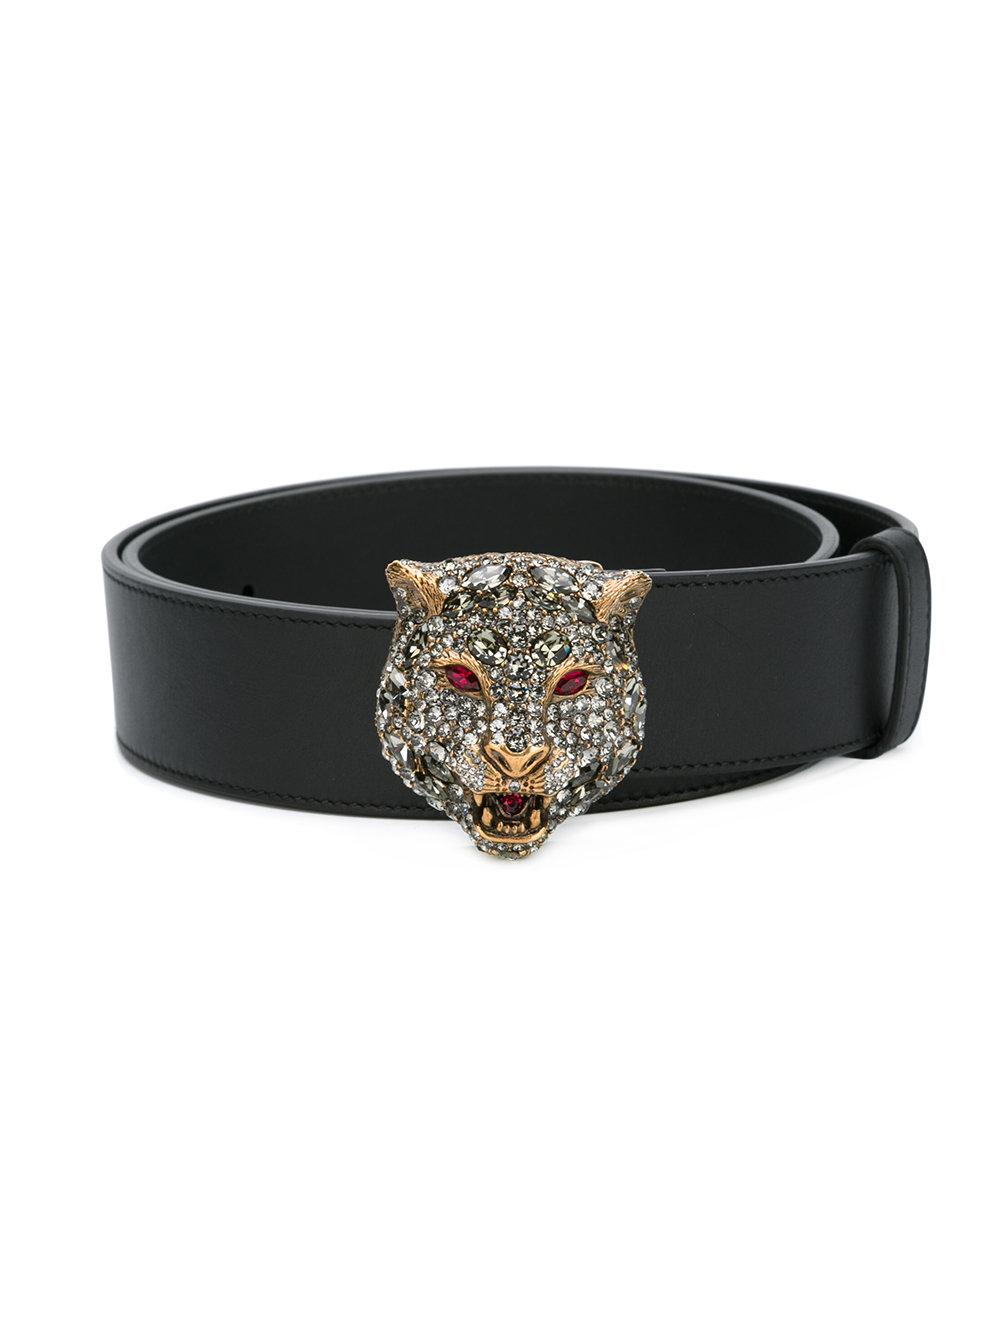 Lyst - Gucci Tiger Embellished Belt in Black